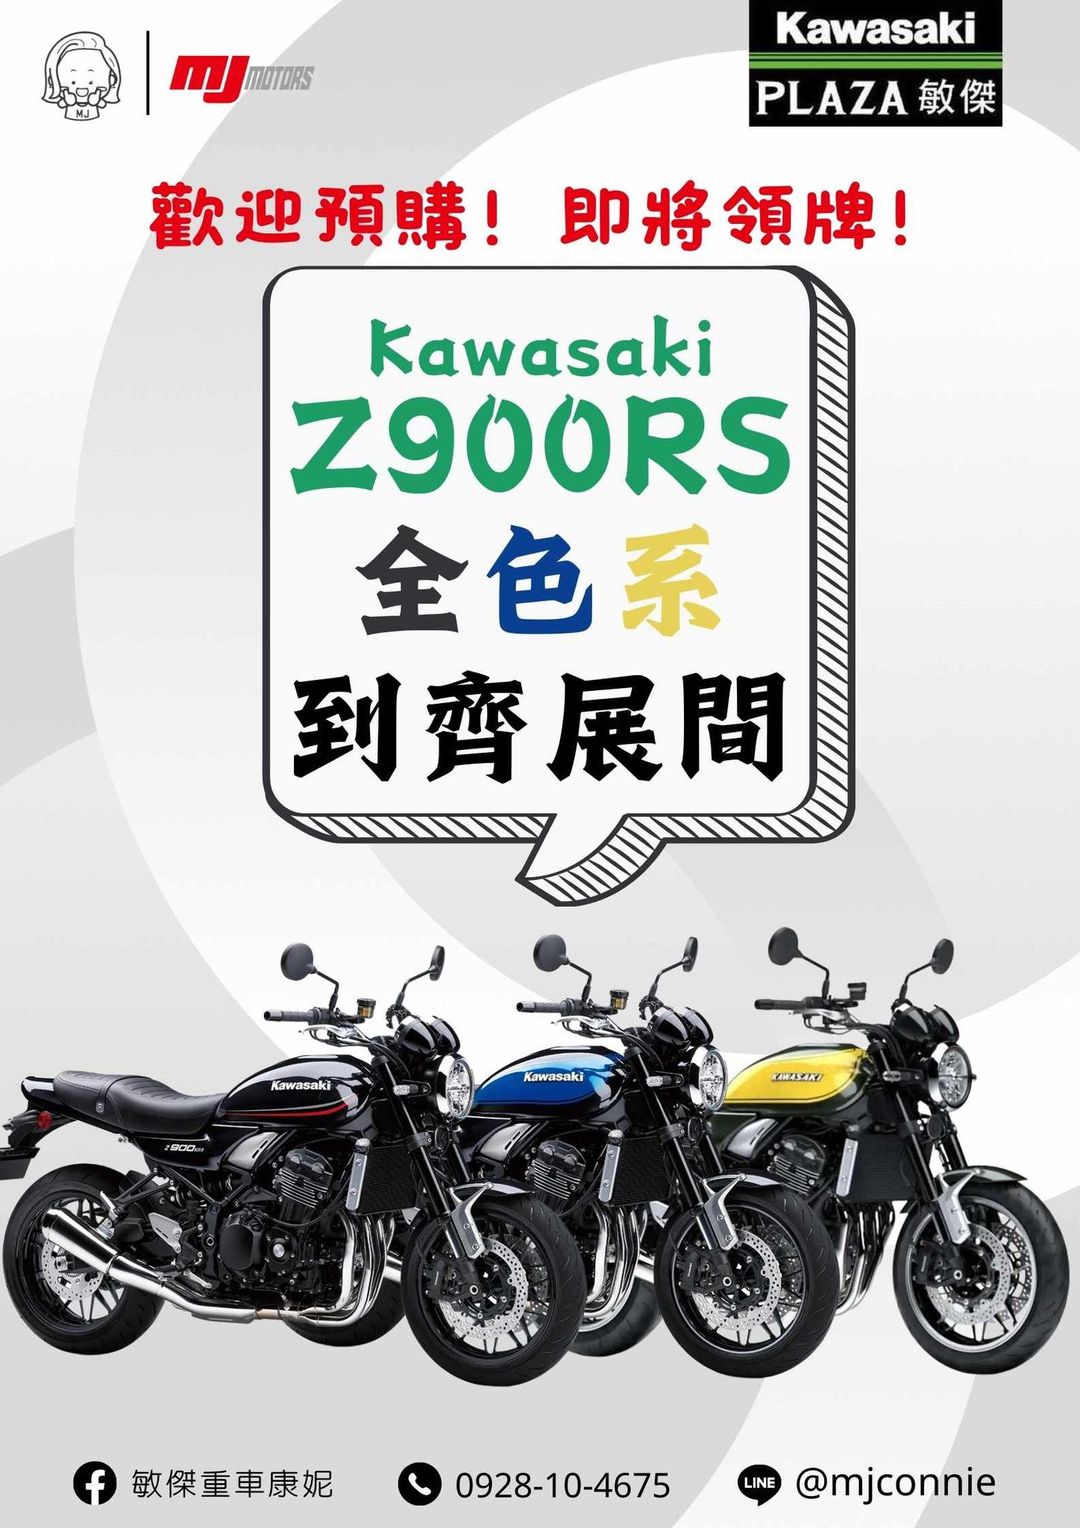 【敏傑車業資深銷售專員 康妮 Connie】KAWASAKI Z900RS - 「Webike-摩托車市」 『敏傑康妮』Kawasaki Z900RS 2024式樣 新配色 好亮眼!!! 售62.8萬元 請洽敏傑重車康妮